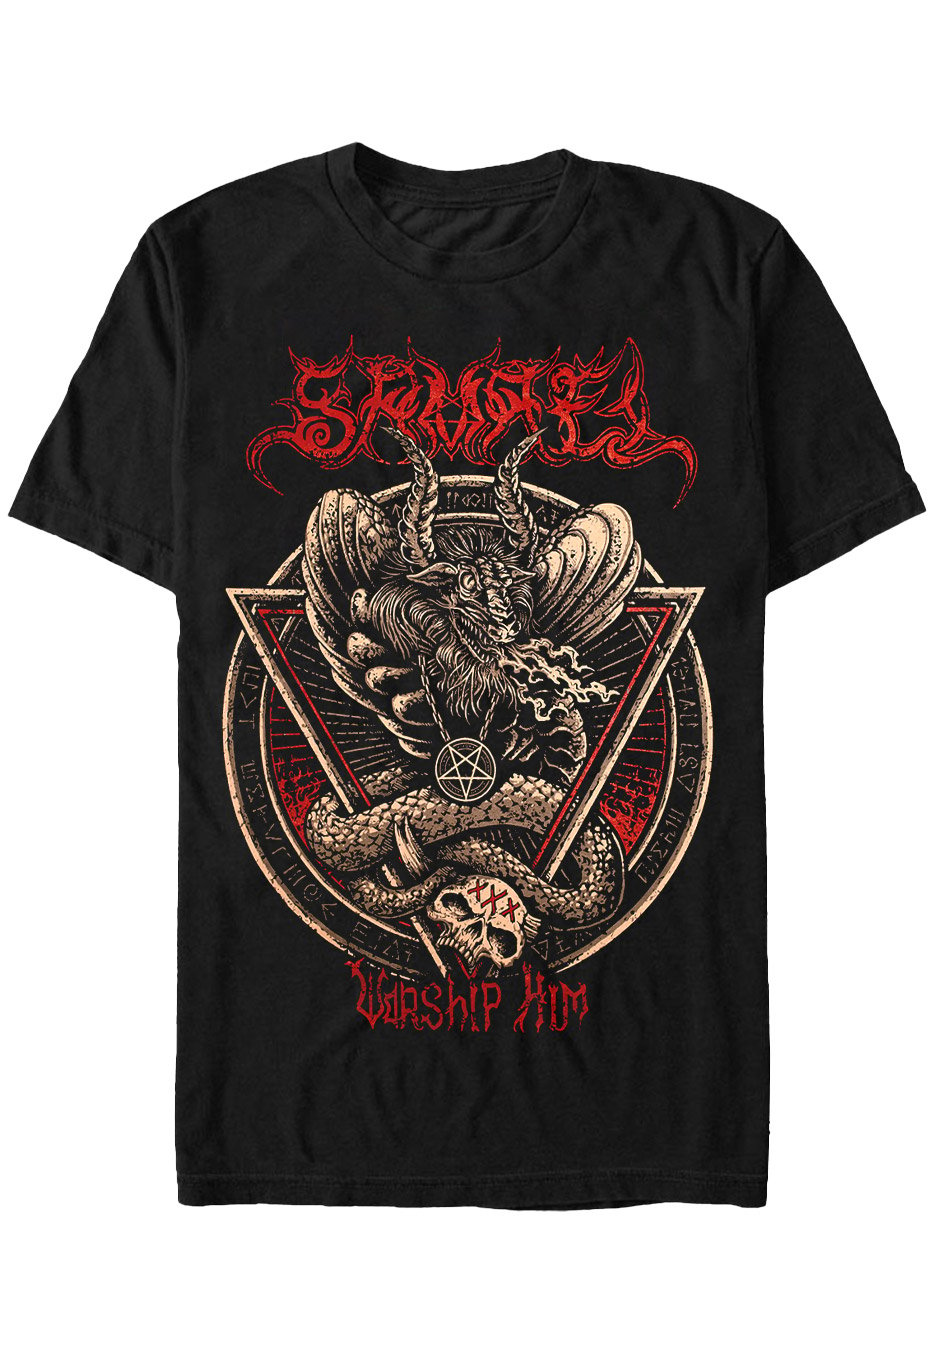 Samael - Worship Him Black - T-Shirt